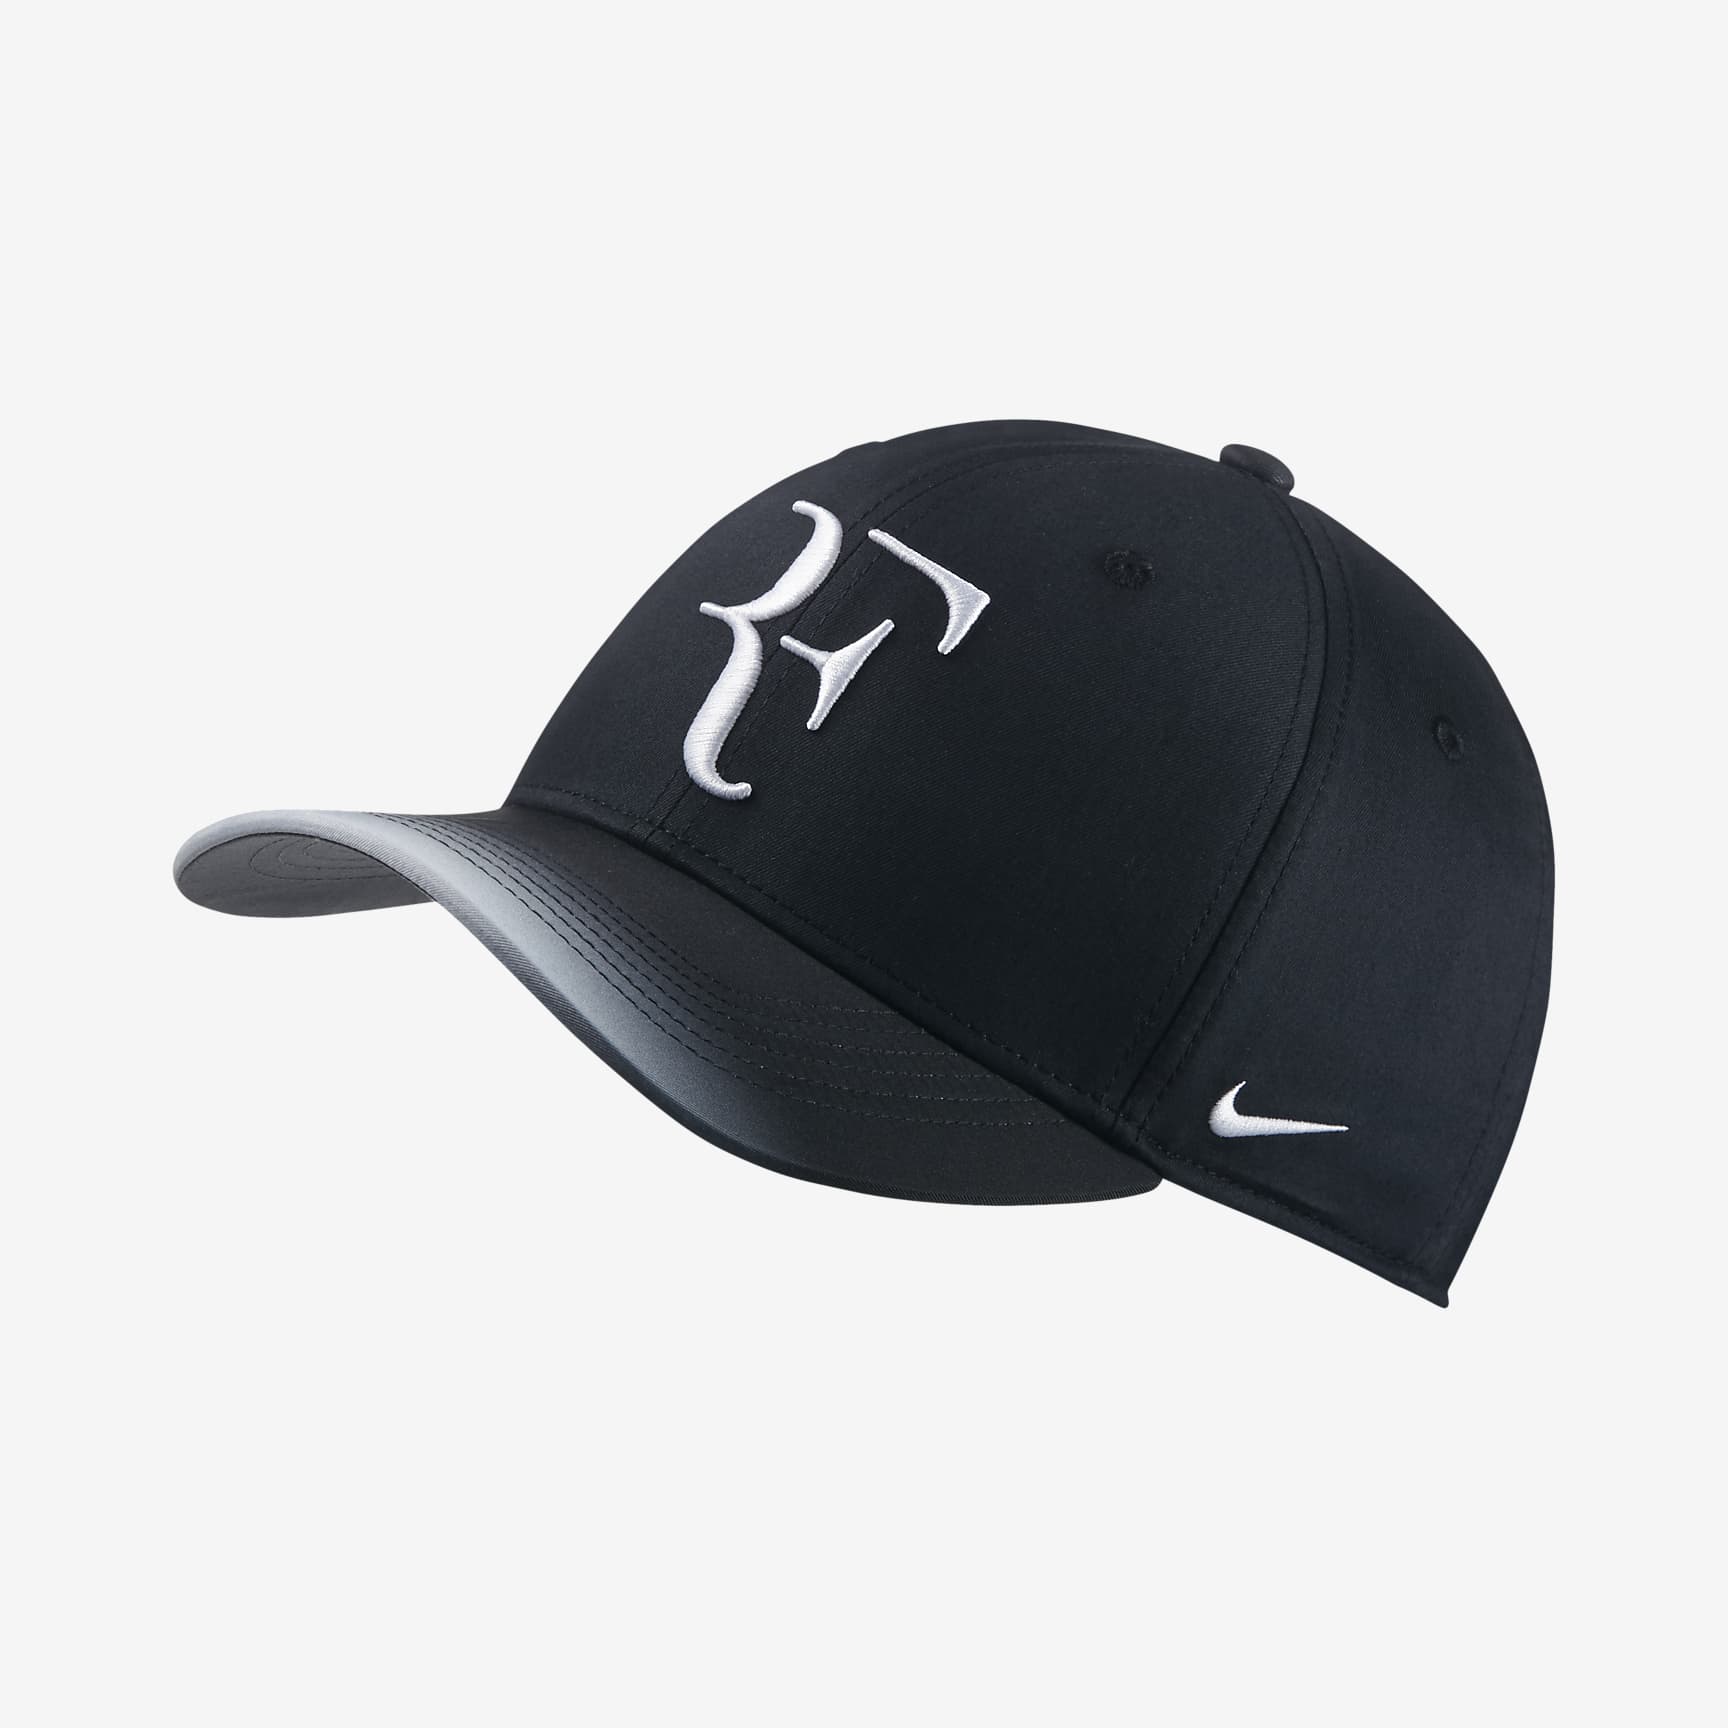 nikecourt-aerobill-roger-federer-adjustable-tennis-hat-StVltm.png